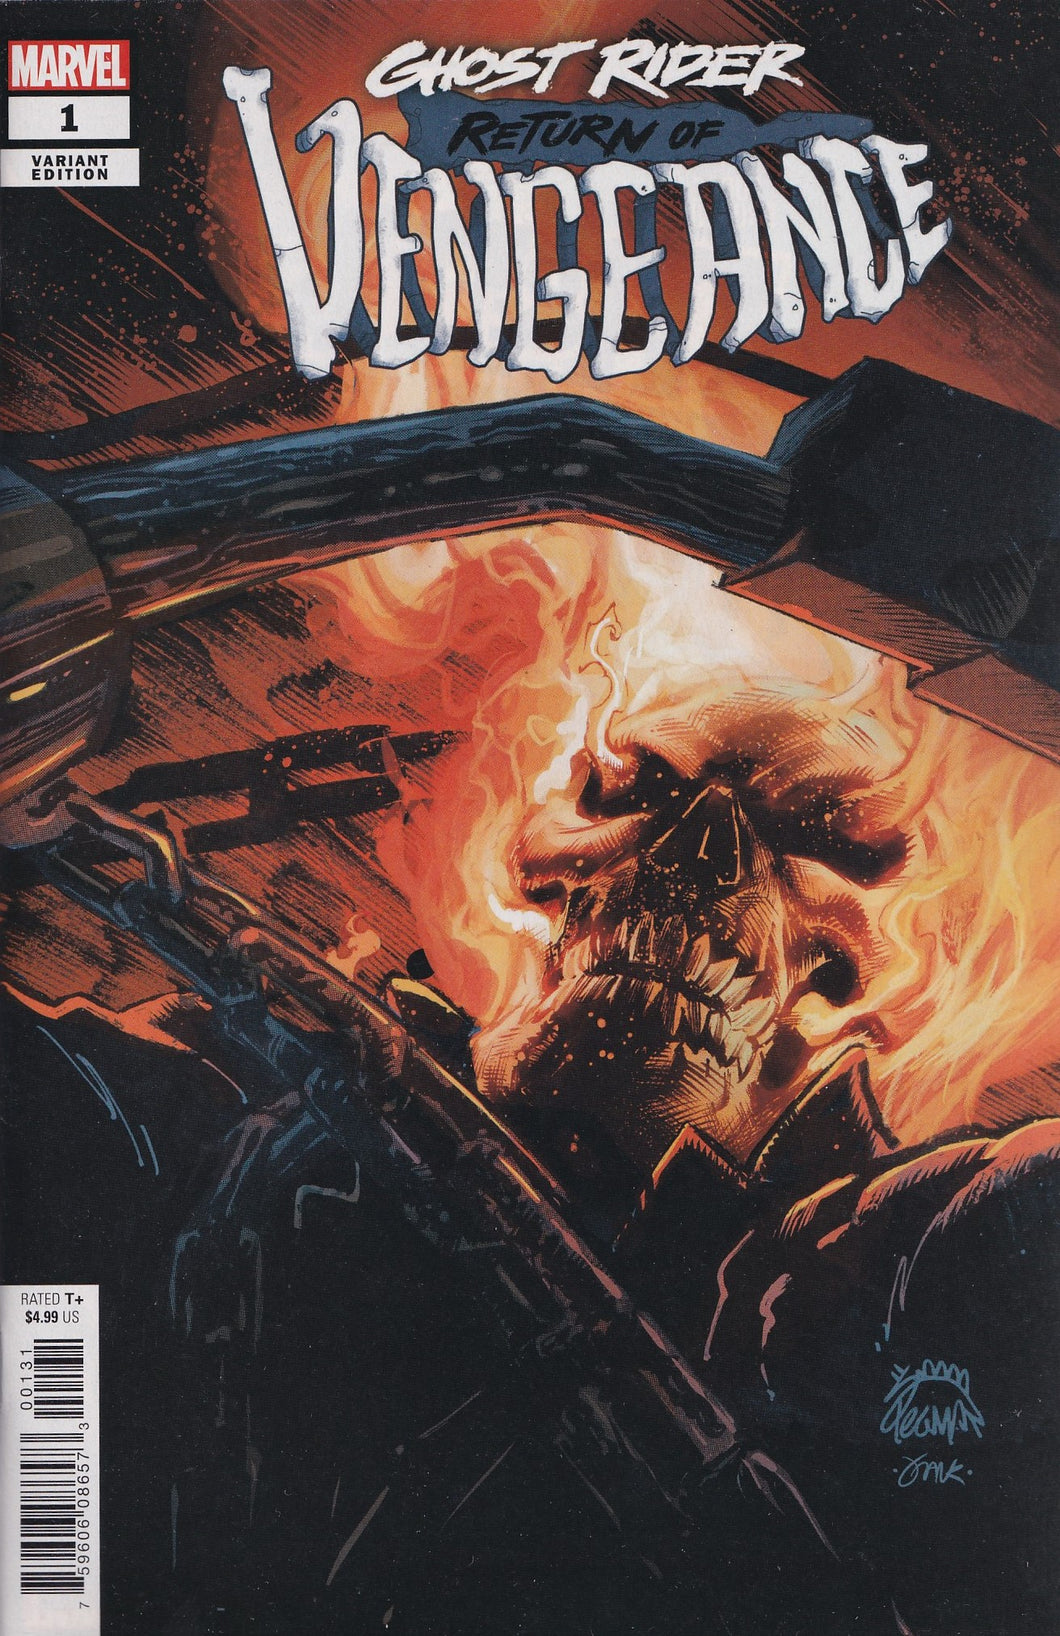 GHOST RIDER: RETURN OF VENGEANCE #1 (STEGMAN VARIANT) COMIC ~ Marvel Comics